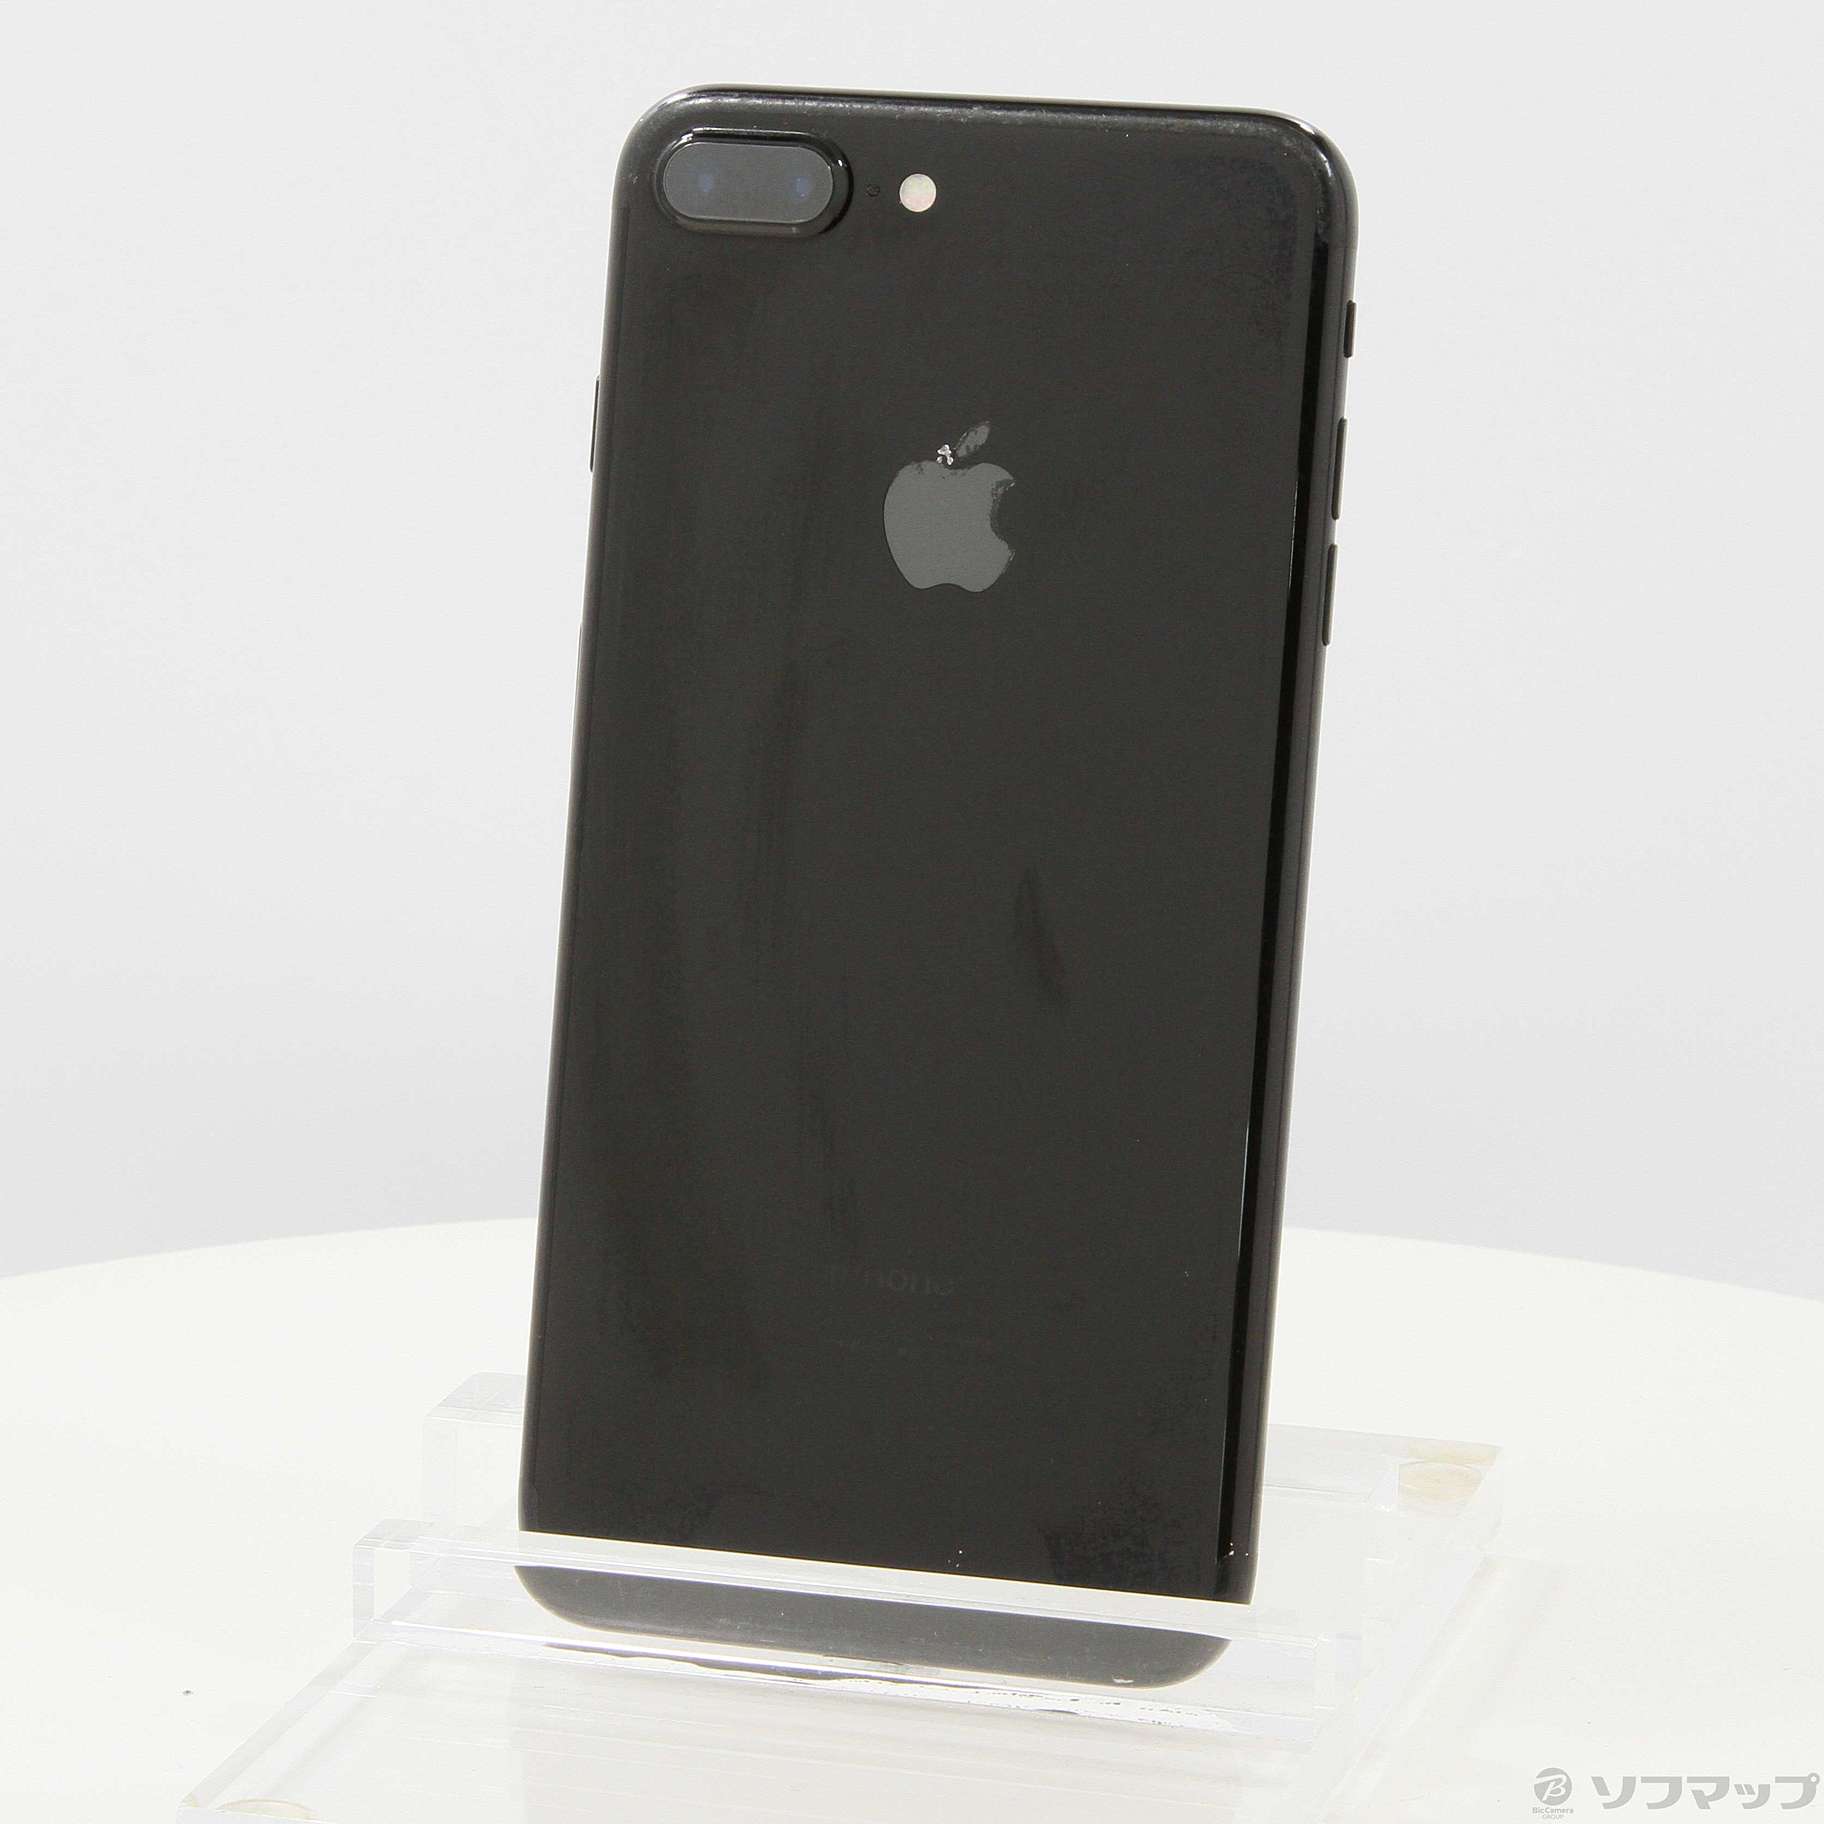 iPhone 7 Plus Jet Black 256 GB SIMフリー - www.sorbillomenu.com